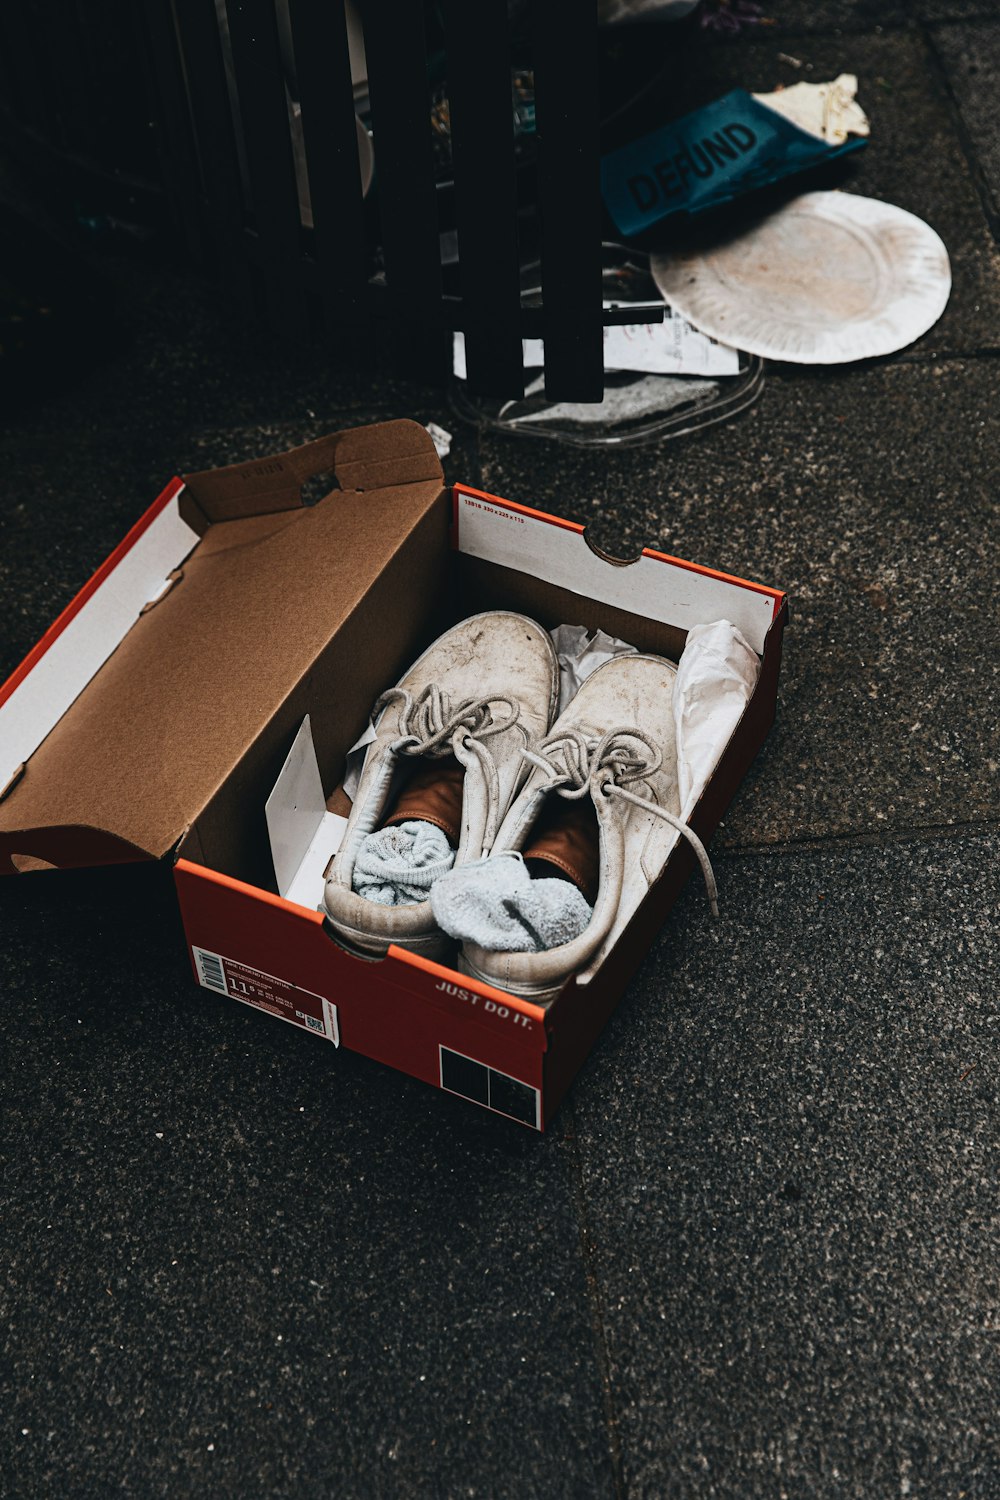 ホワイト&ブラック Nike Athletic Shoes in Brown Cardboard Box